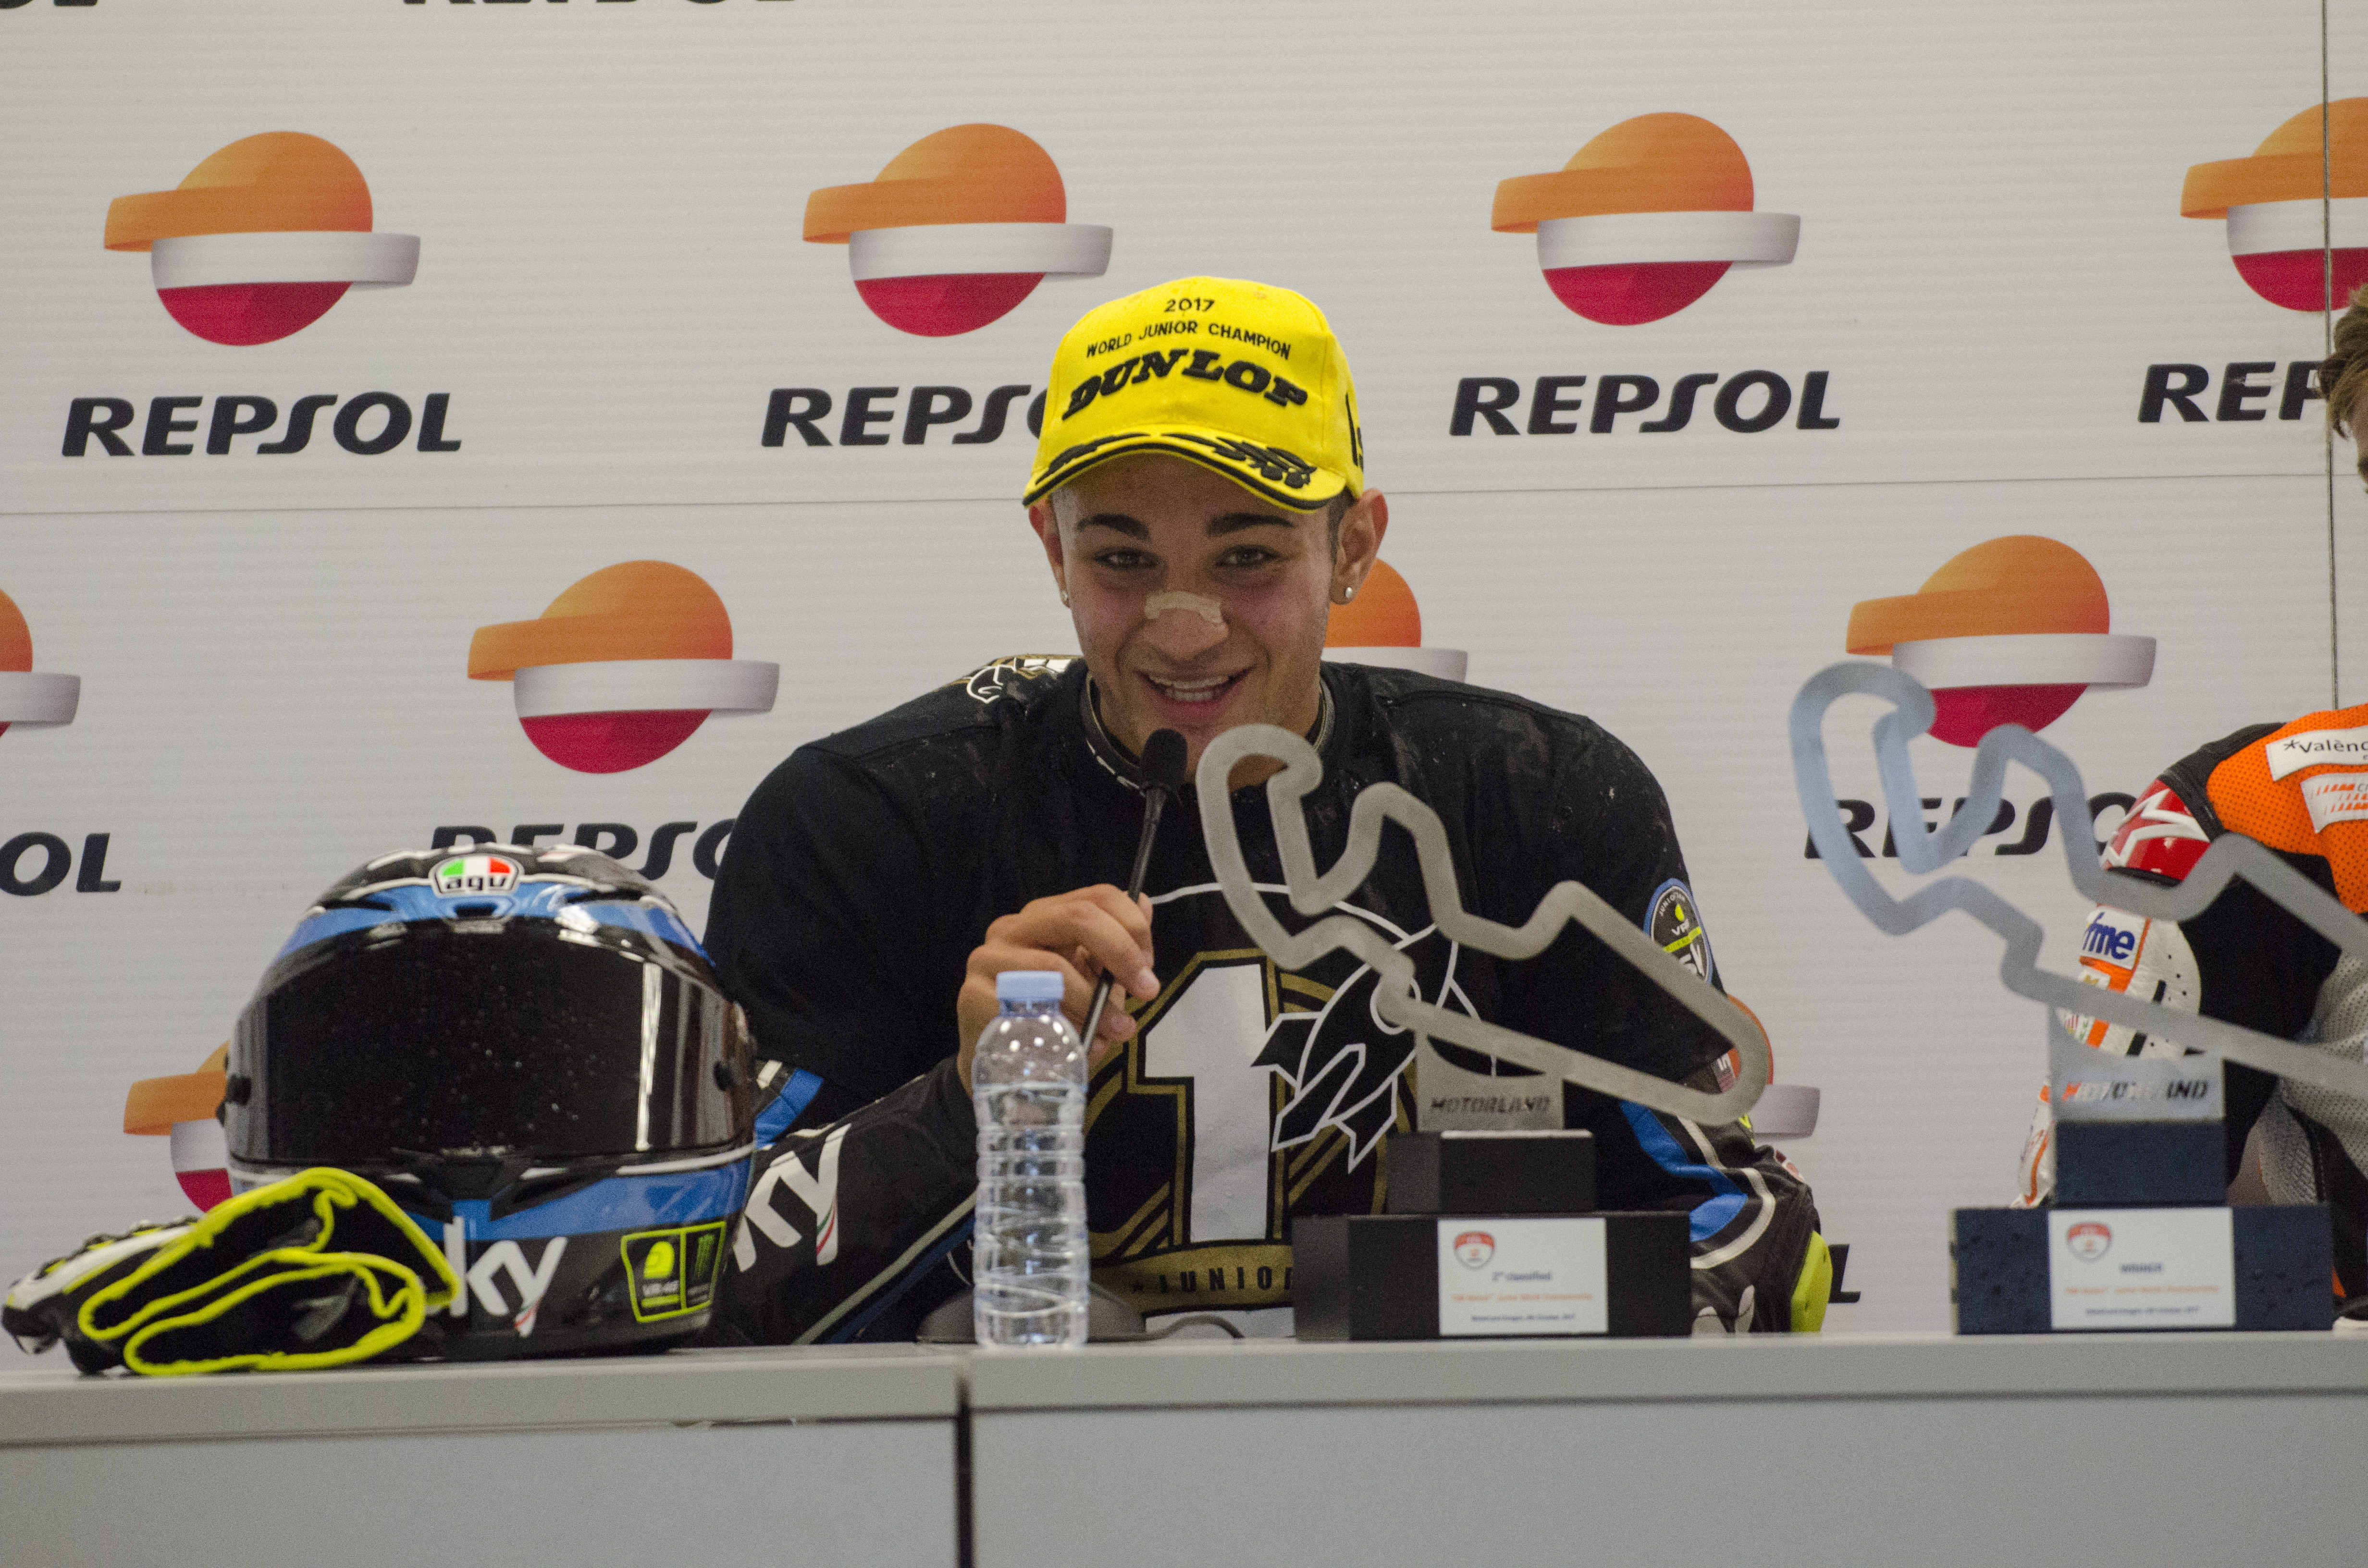 Dennis Foggia, Campeón del Mundo Junior de Moto3